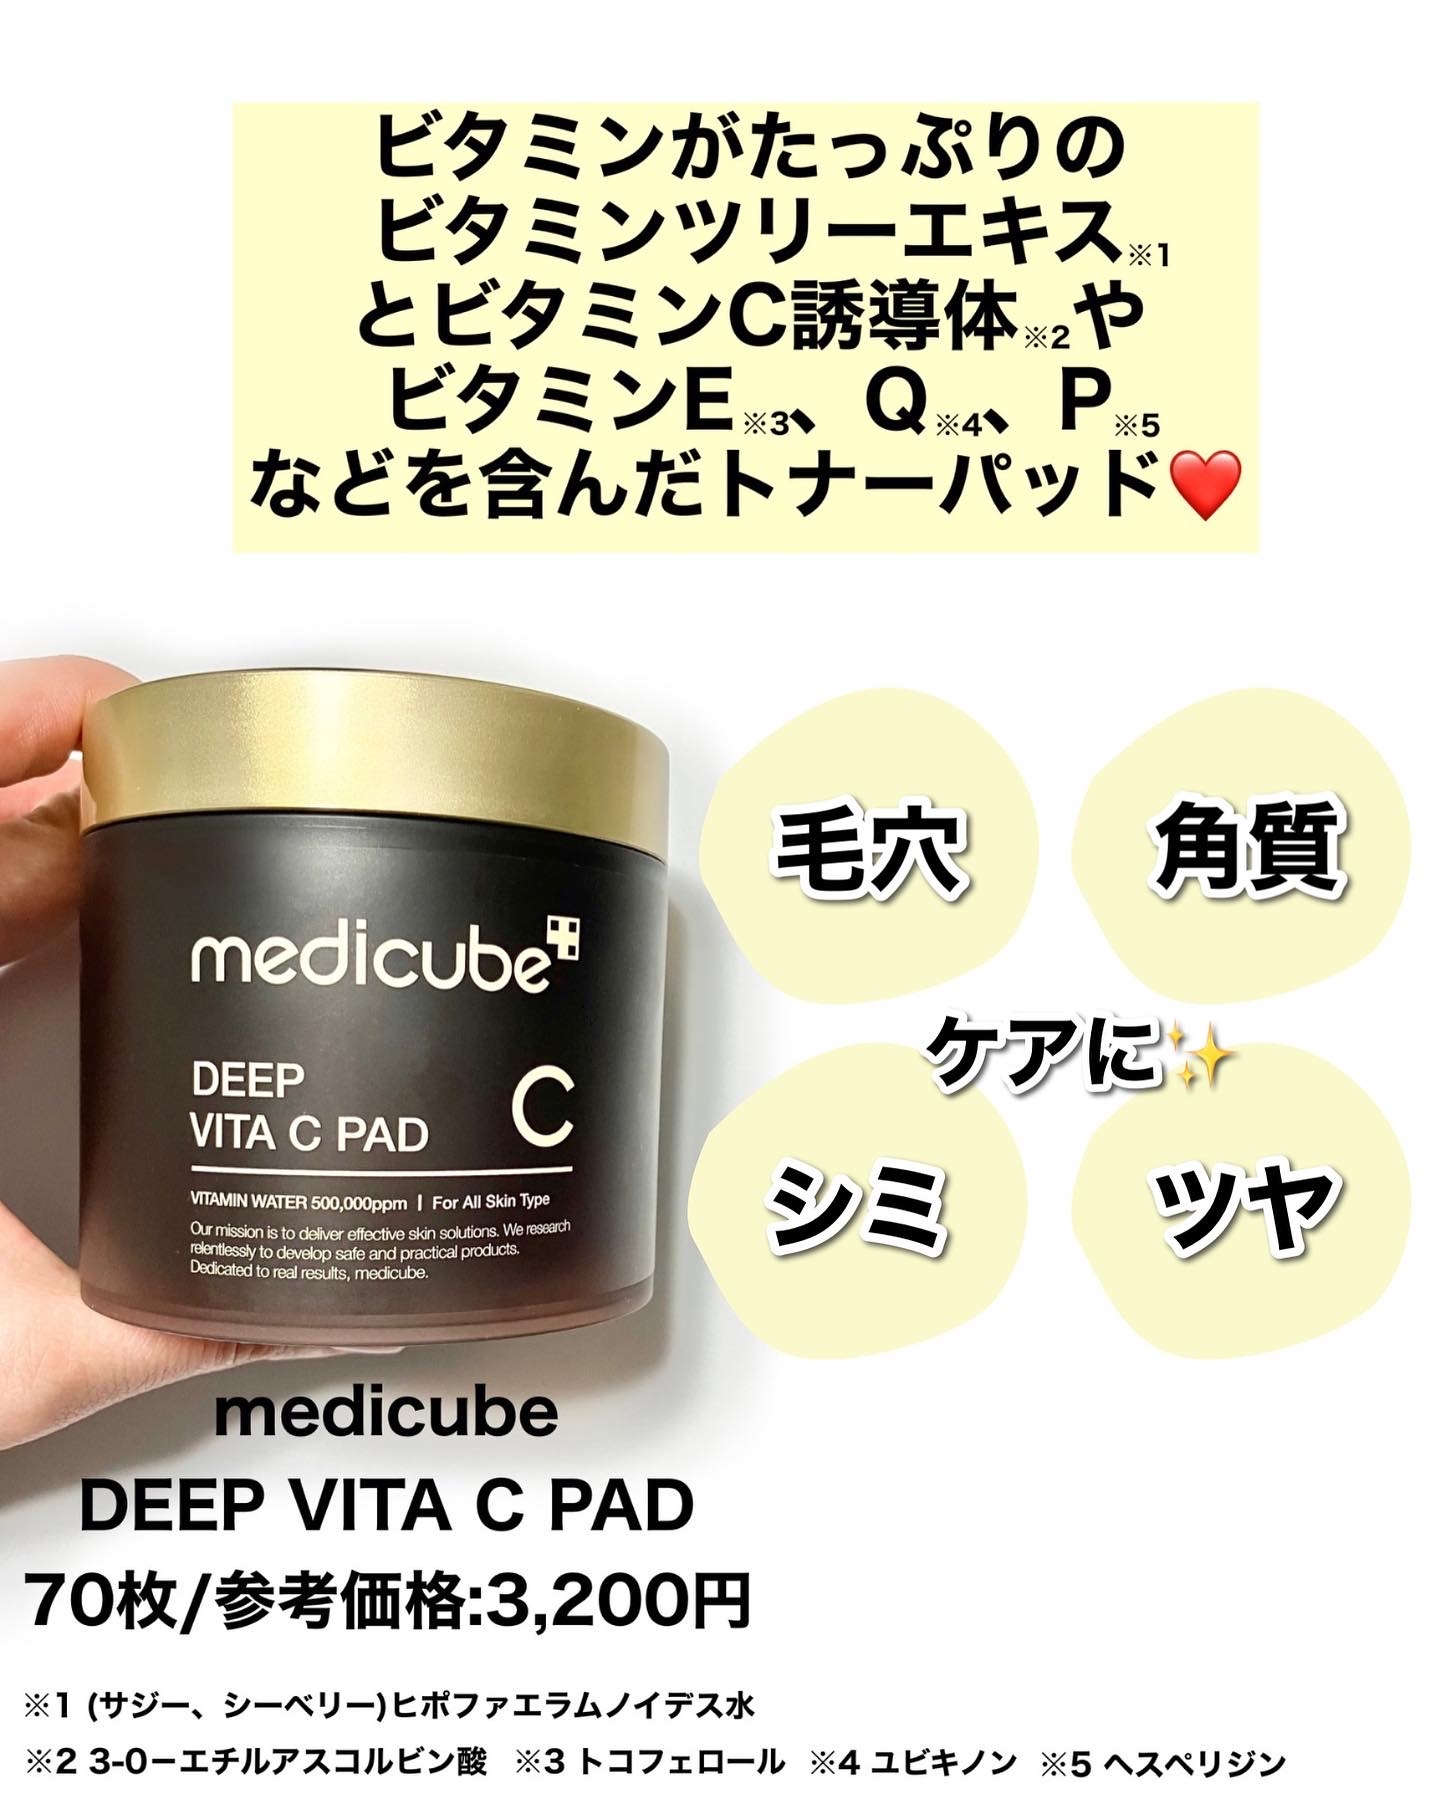 medicube(メディキューブ)DEEP VITA C PAD(ディープビタCパッド)を使ったぶるどっくさんのクチコミ画像2